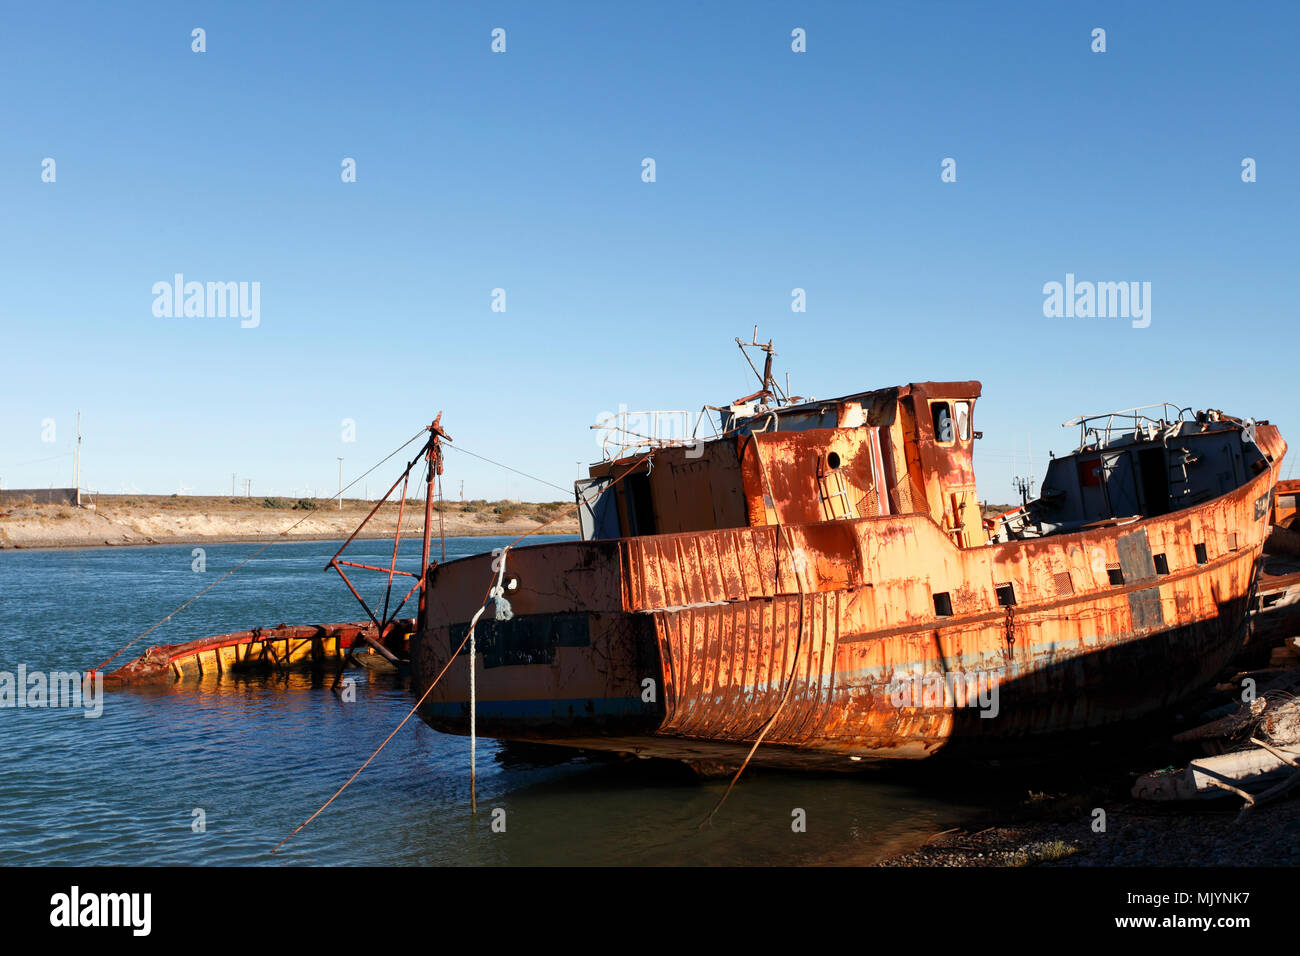 Schrott Boote von der gelben Flotte auf dem Chubut Flusses, Rawson, Provinz  Chubut, Argentinien, Patagonien. Bootswerft am Flussufer Stockfotografie -  Alamy